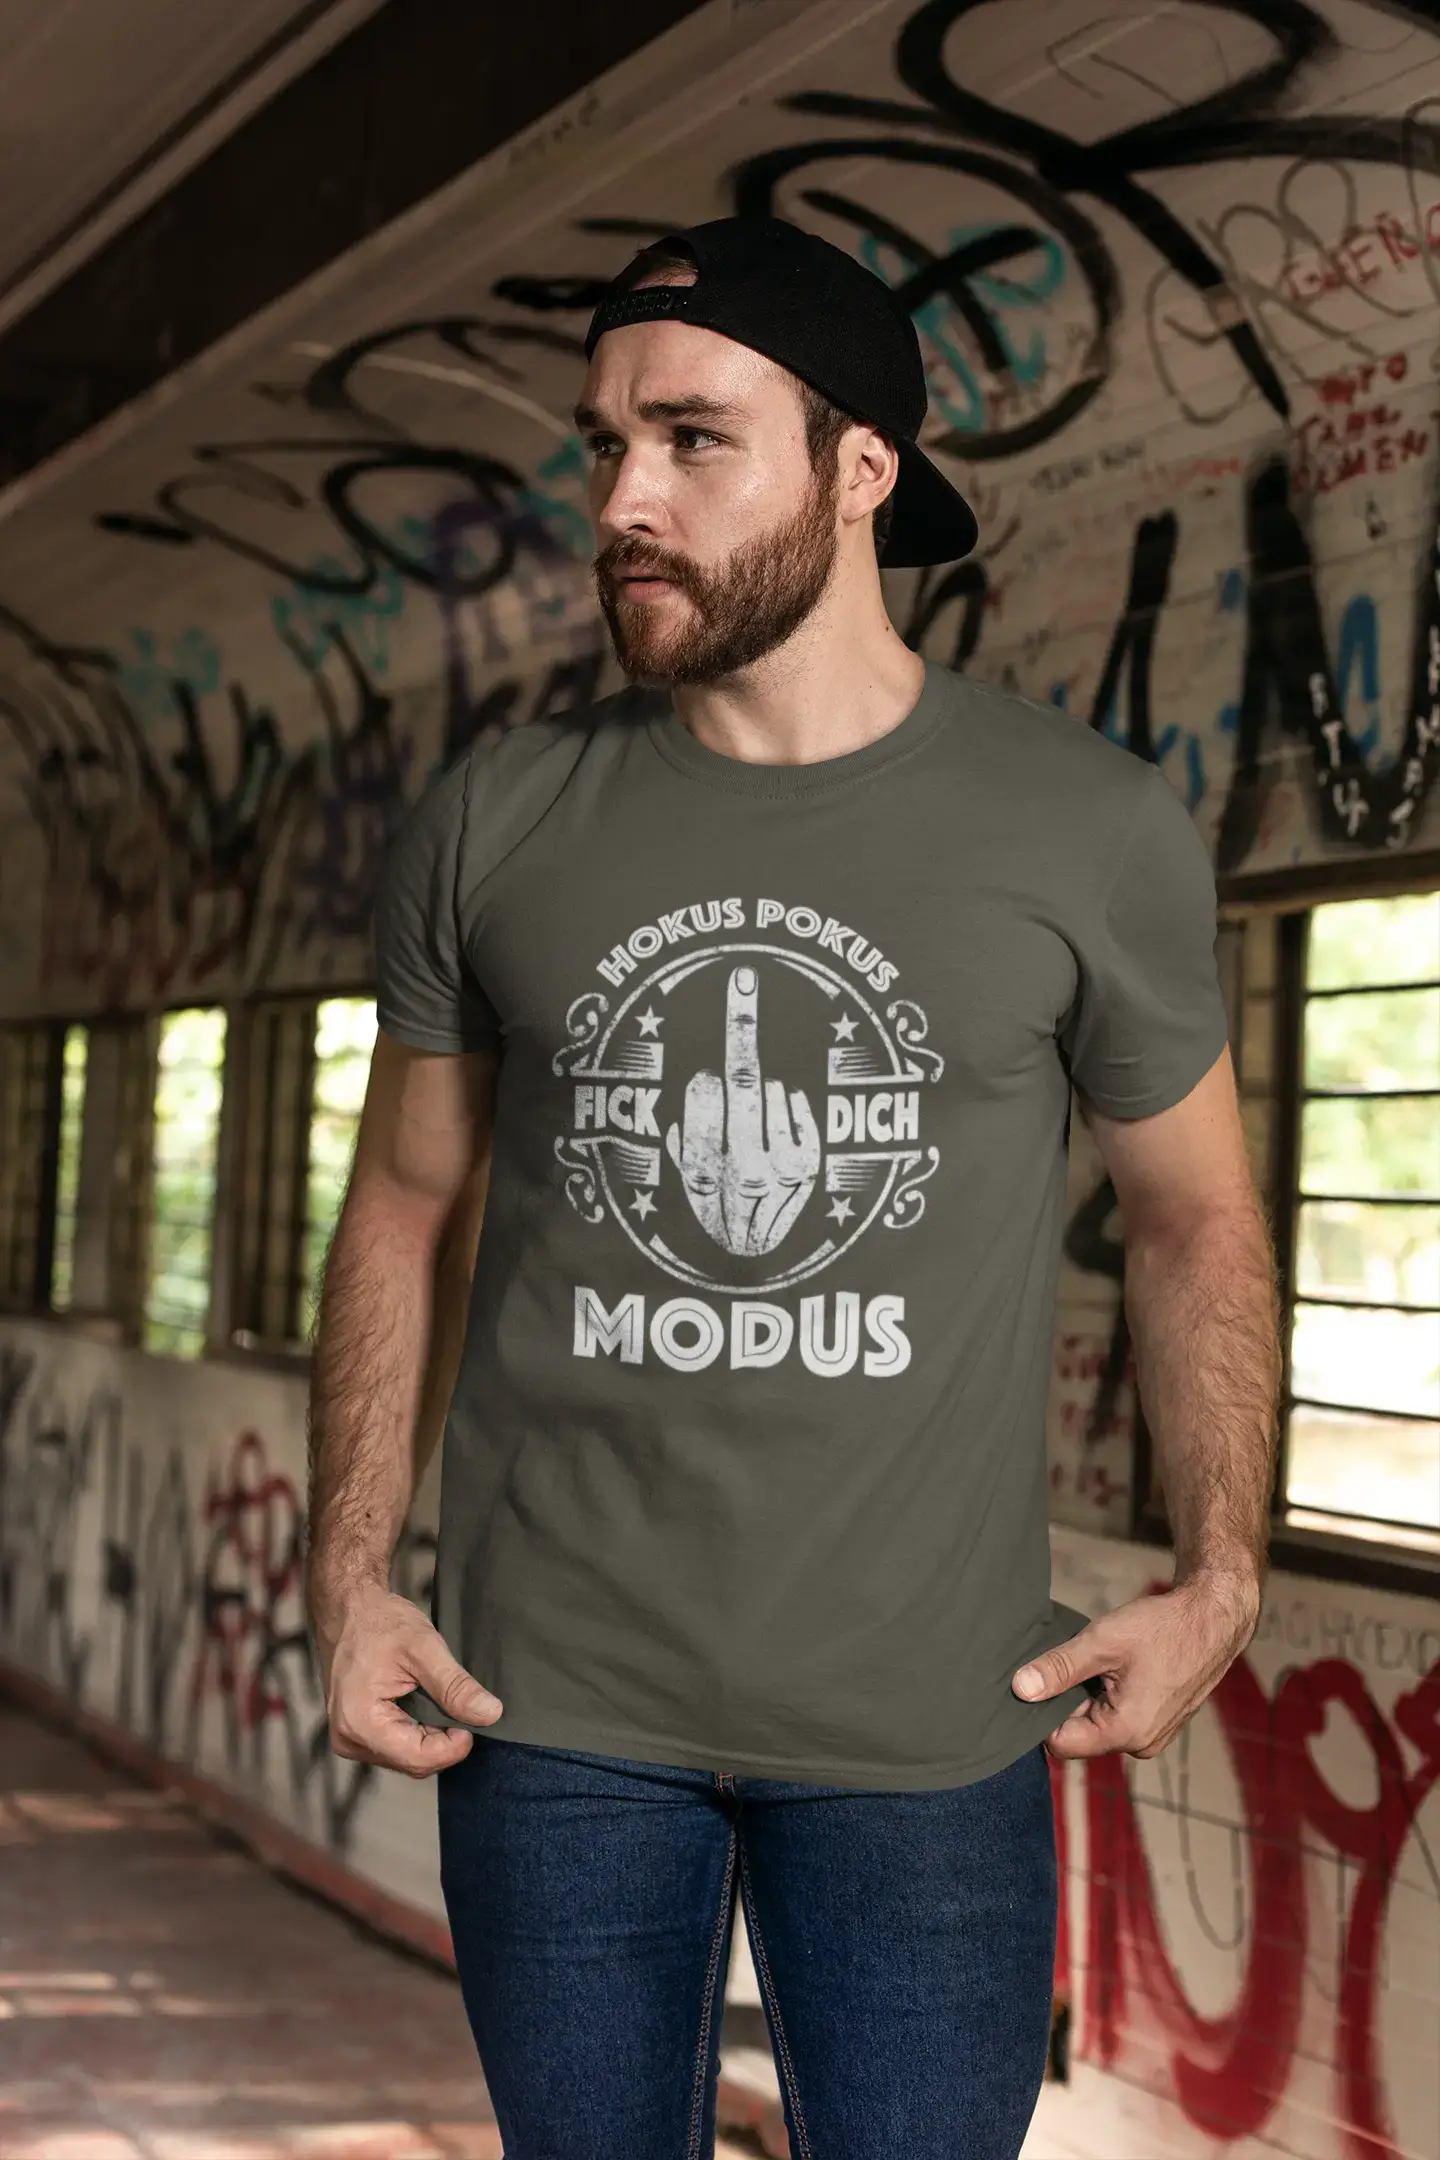 Men's Graphic T-Shirt Hokus Pokus Modus F... Dich Idea Gift